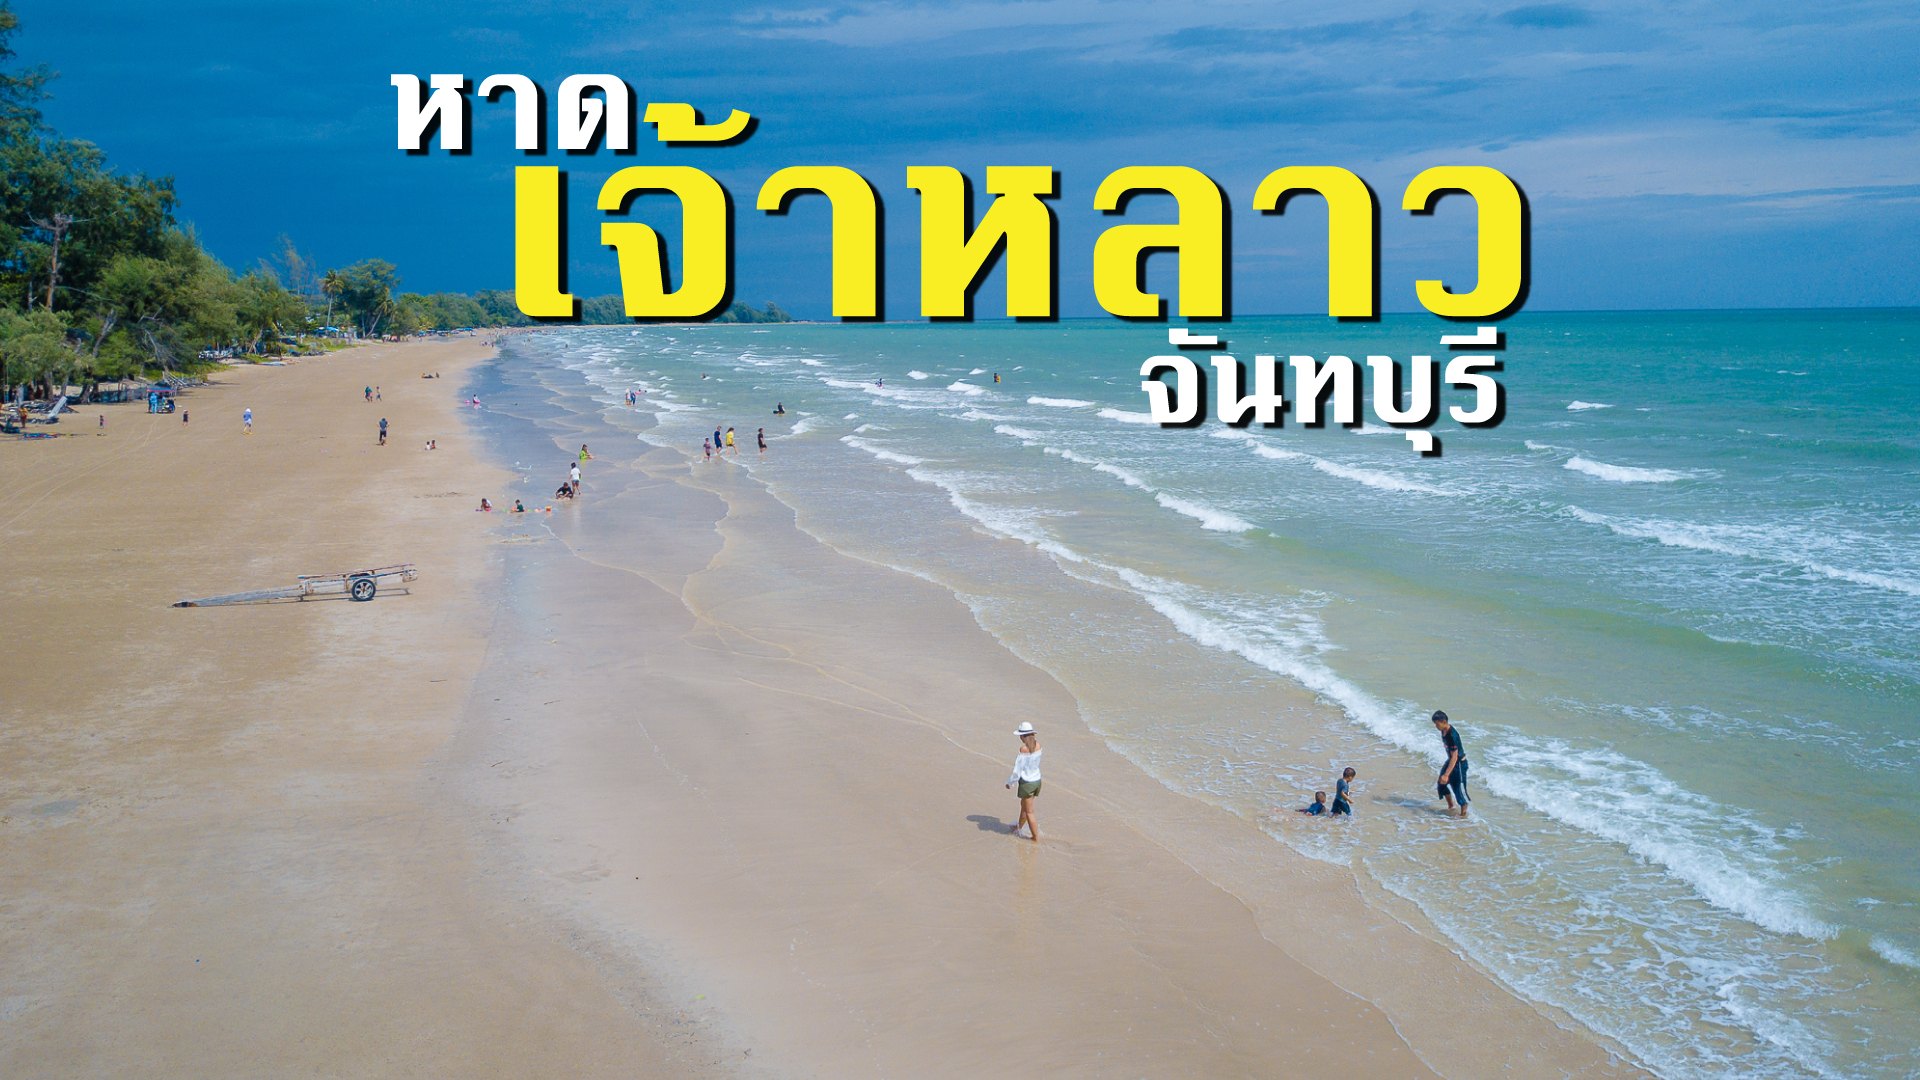 หาดเจ้าหลาว หาดสวย น้ำใส ชายหาดที่สวยที่สุดในจันทบุรี!!!